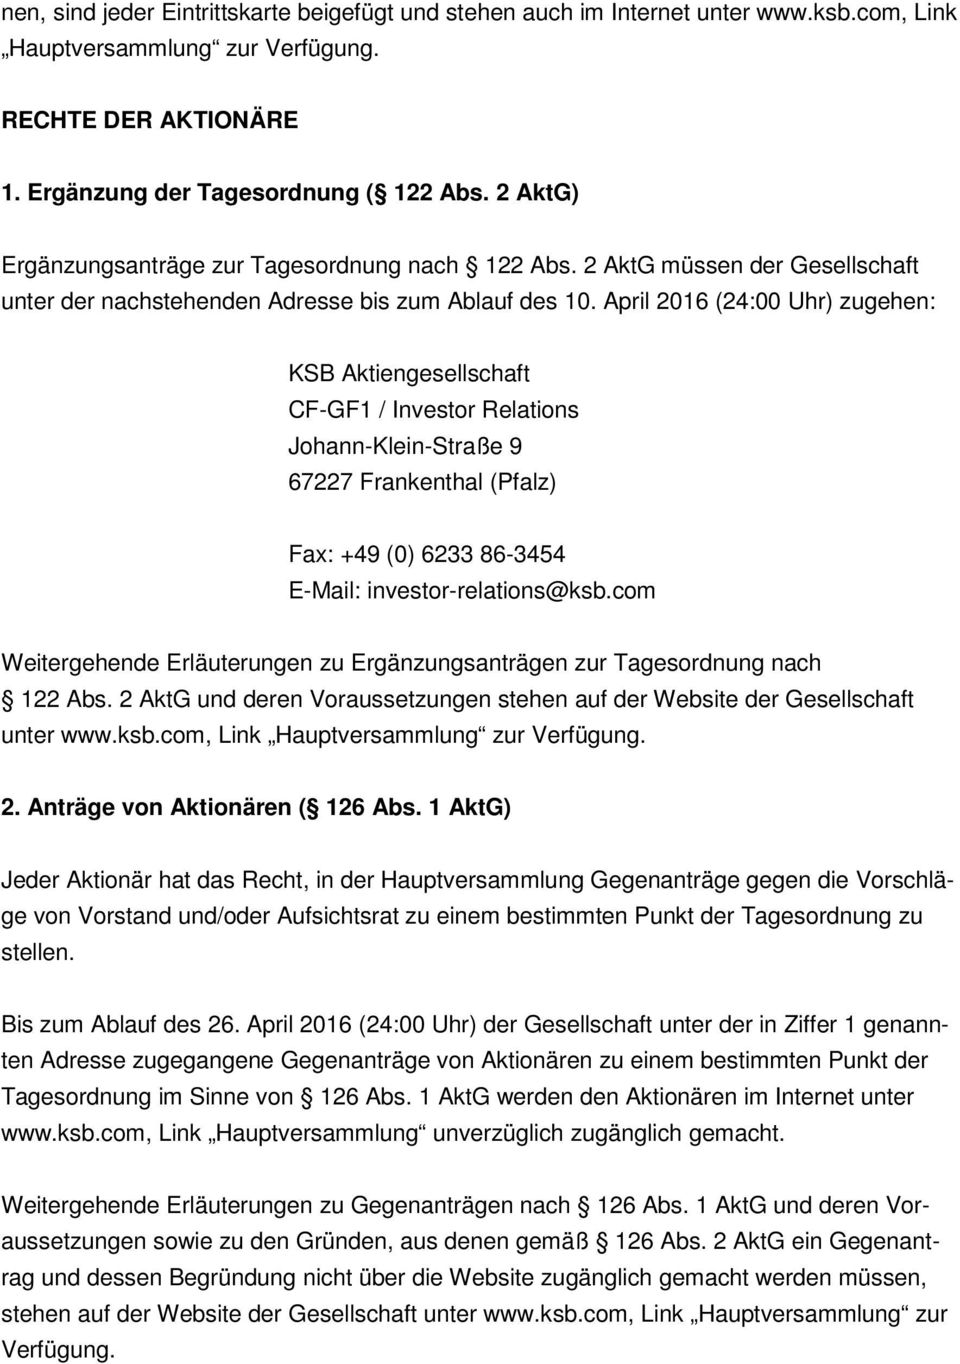 April 2016 (24:00 Uhr) zugehen: KSB Aktiengesellschaft CF-GF1 / Investor Relations Johann-Klein-Straße 9 67227 Frankenthal (Pfalz) Fax: +49 (0) 6233 86-3454 E-Mail: investor-relations@ksb.